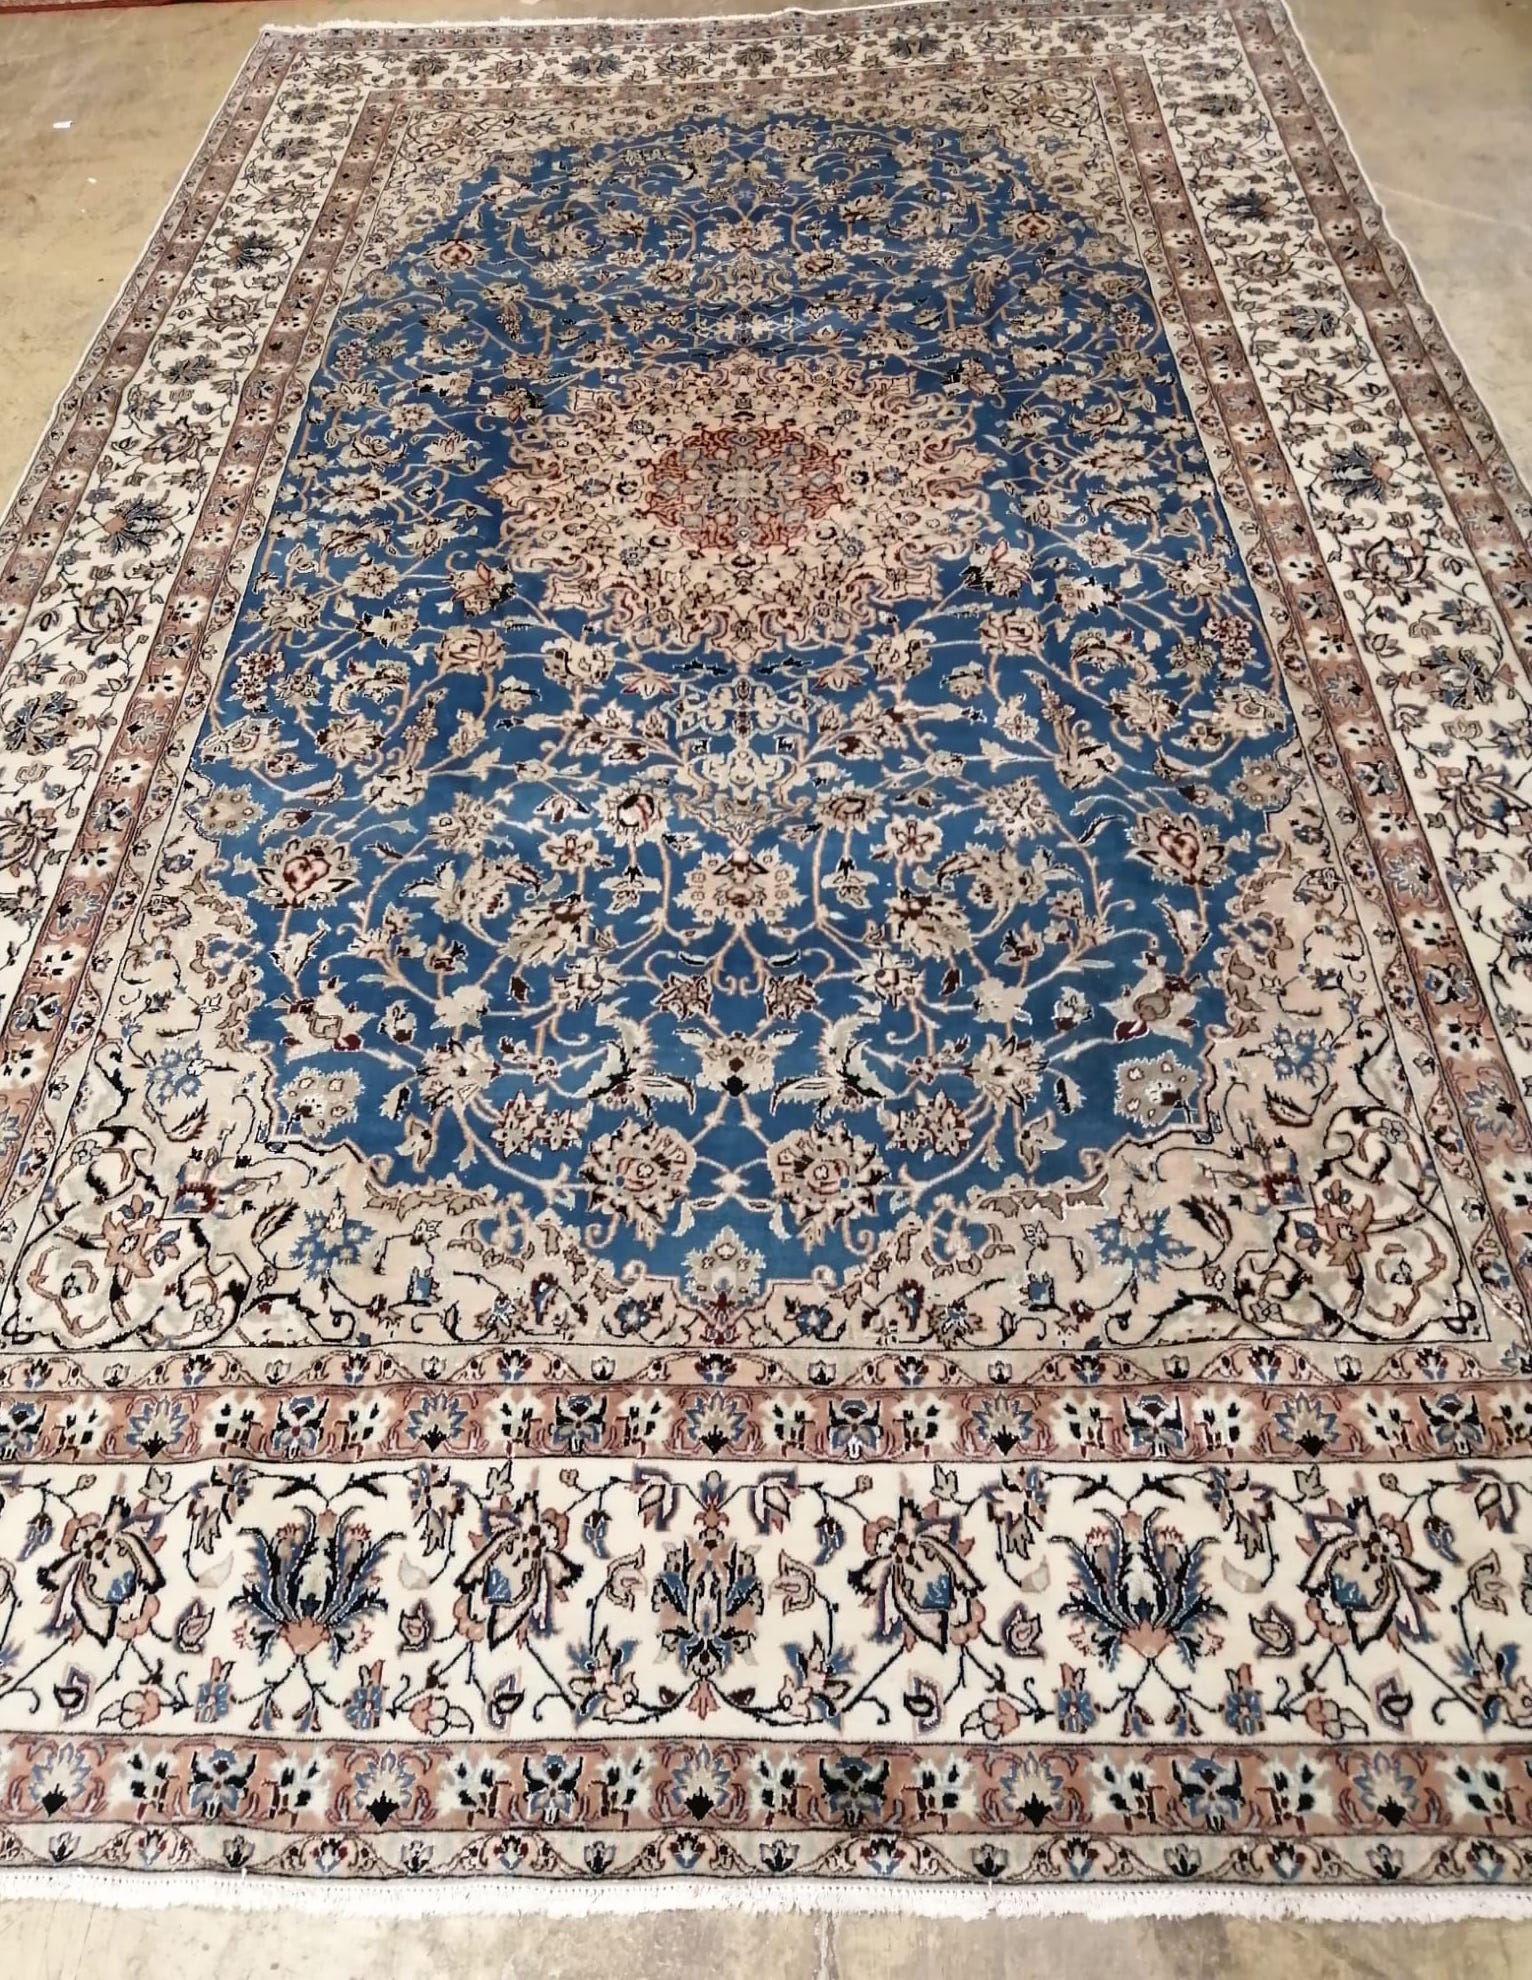 A Nain blue ground carpet, 355 x 215cm